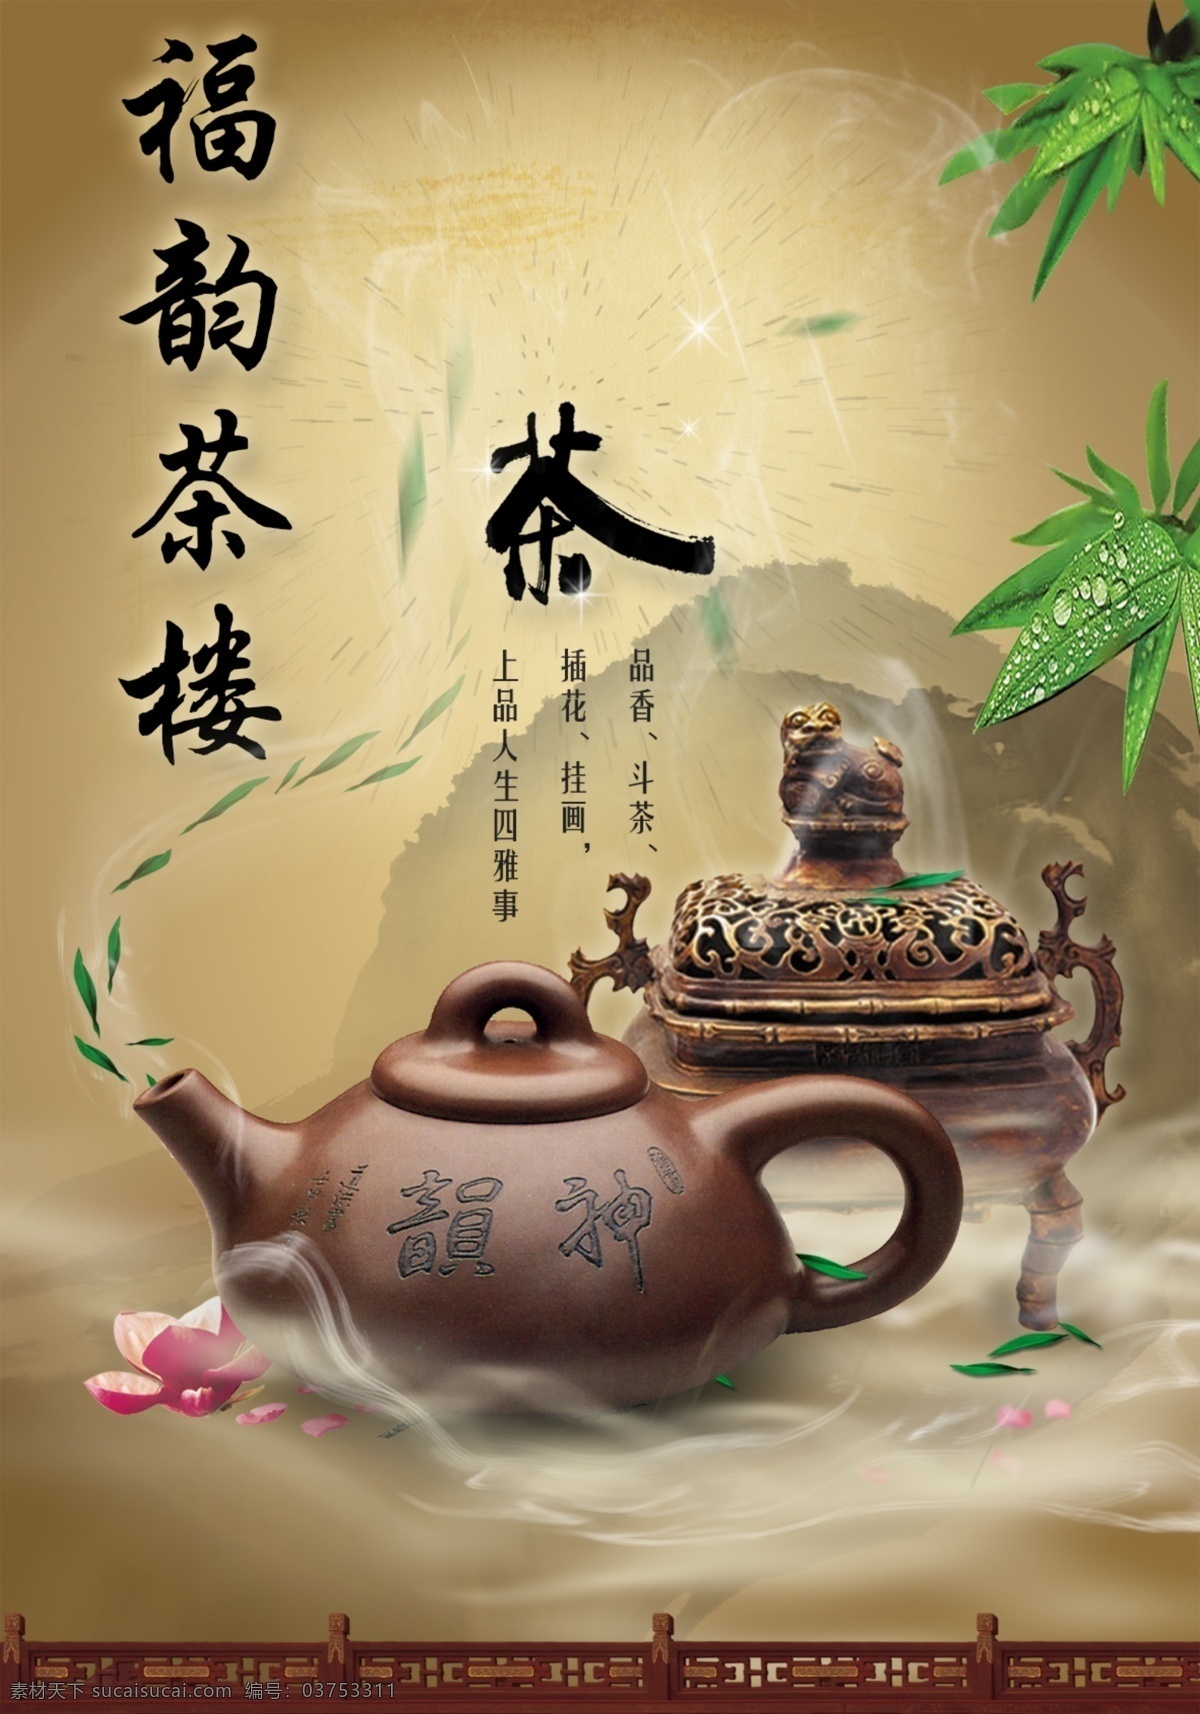 福韵茶楼 茶 古典 传承 文化